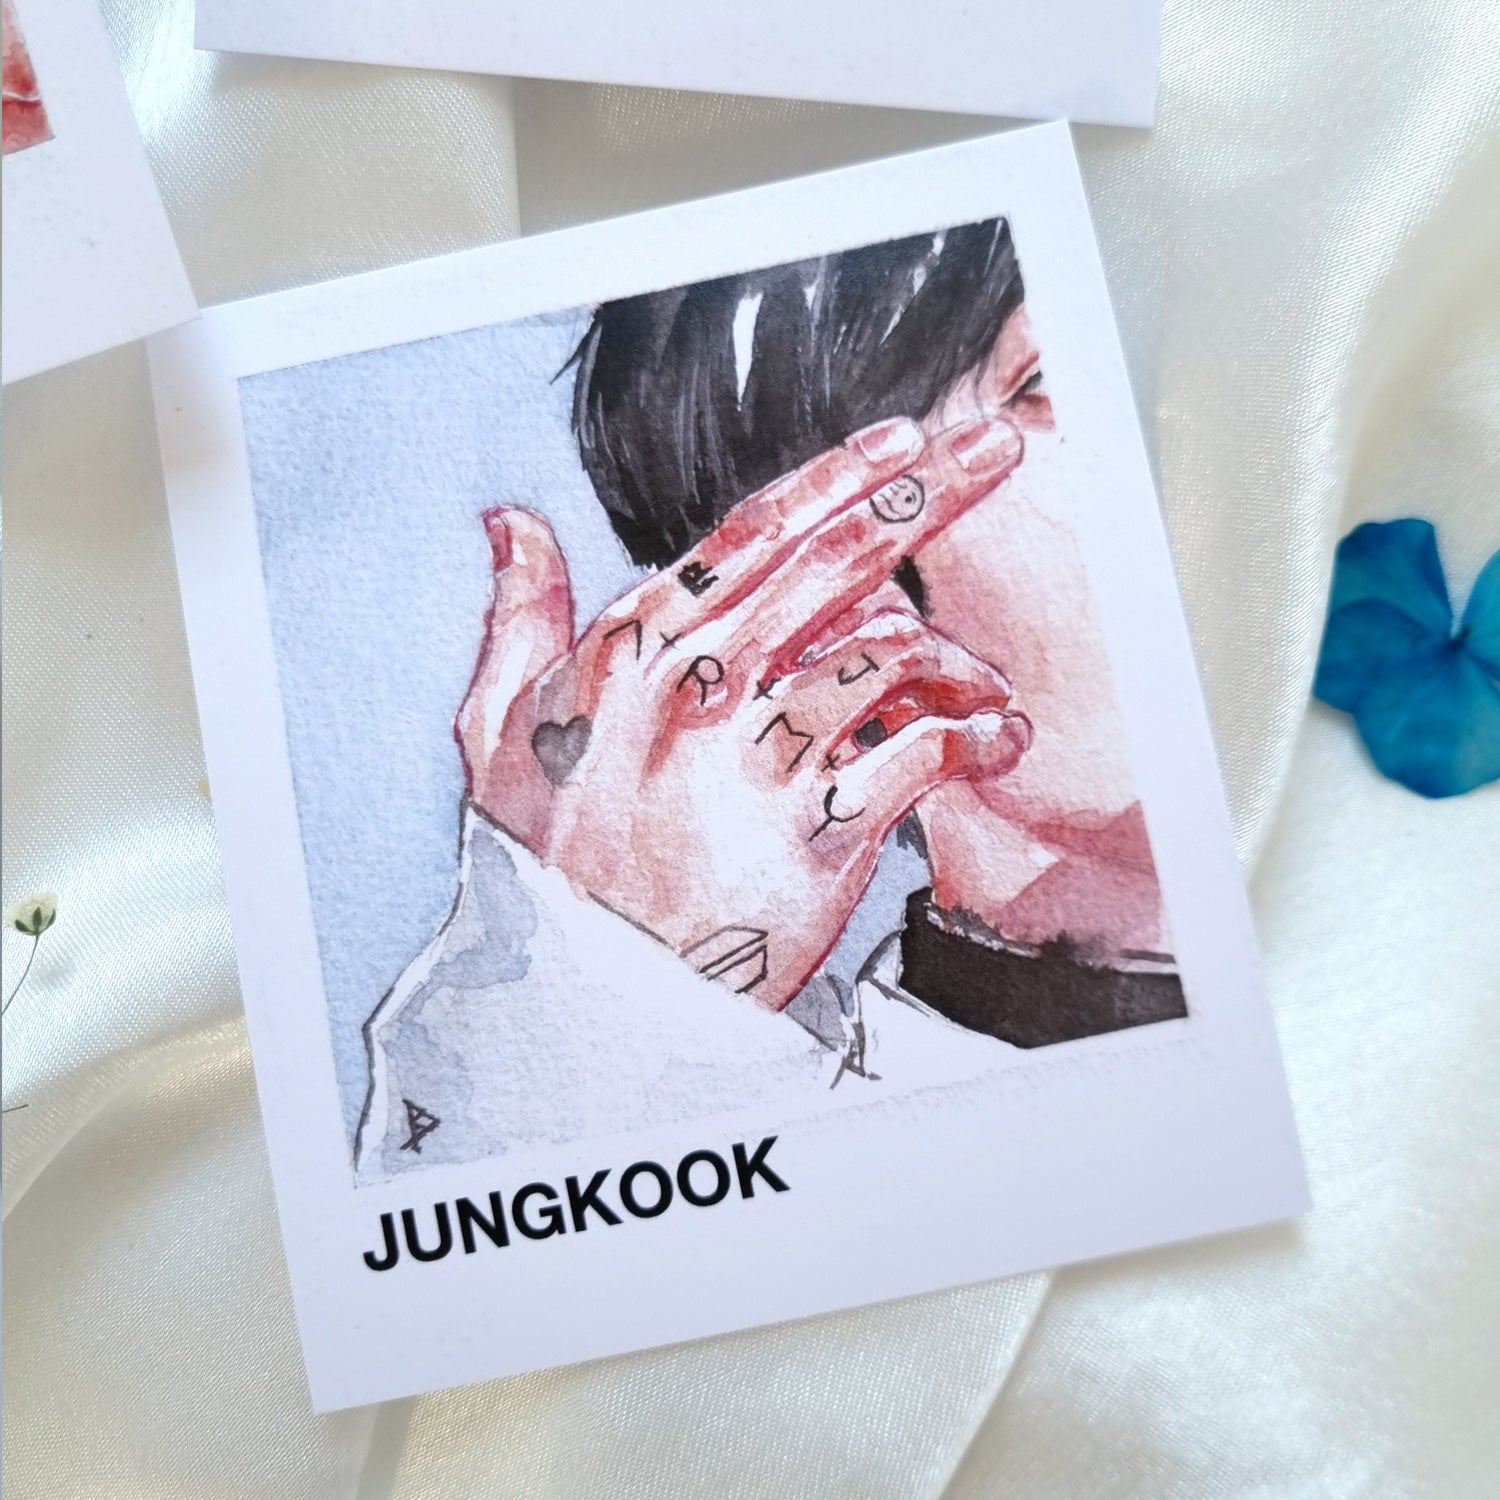 BTS Jungkook Details Set of 3 Photocard-style Prints